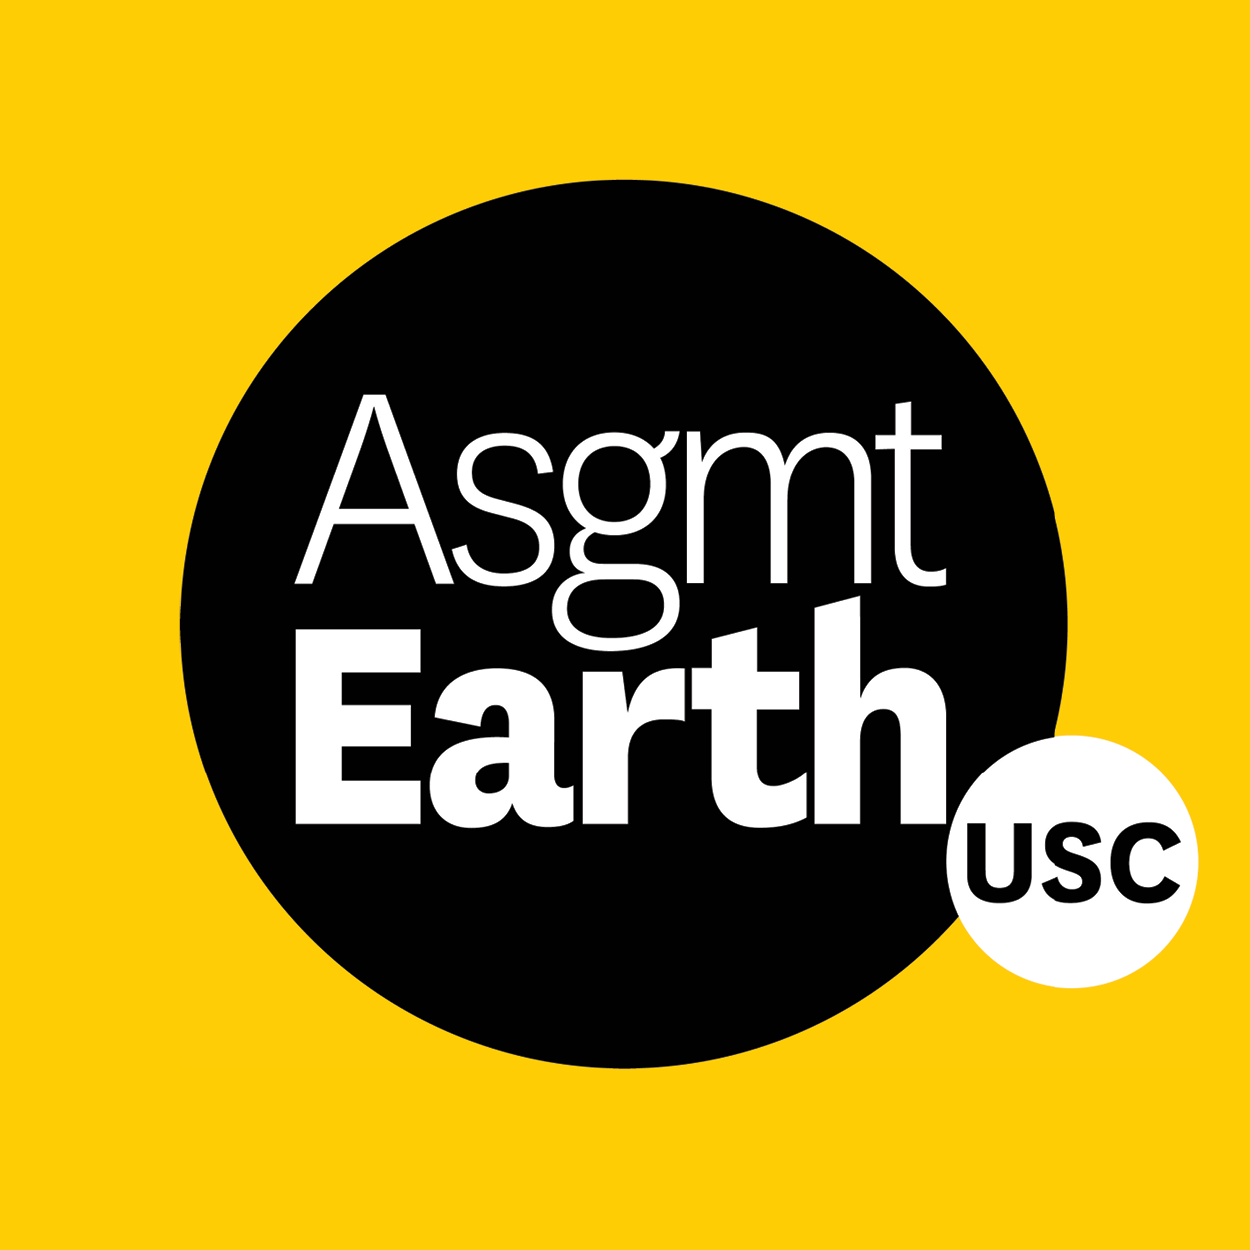 Asgmt Earth USC